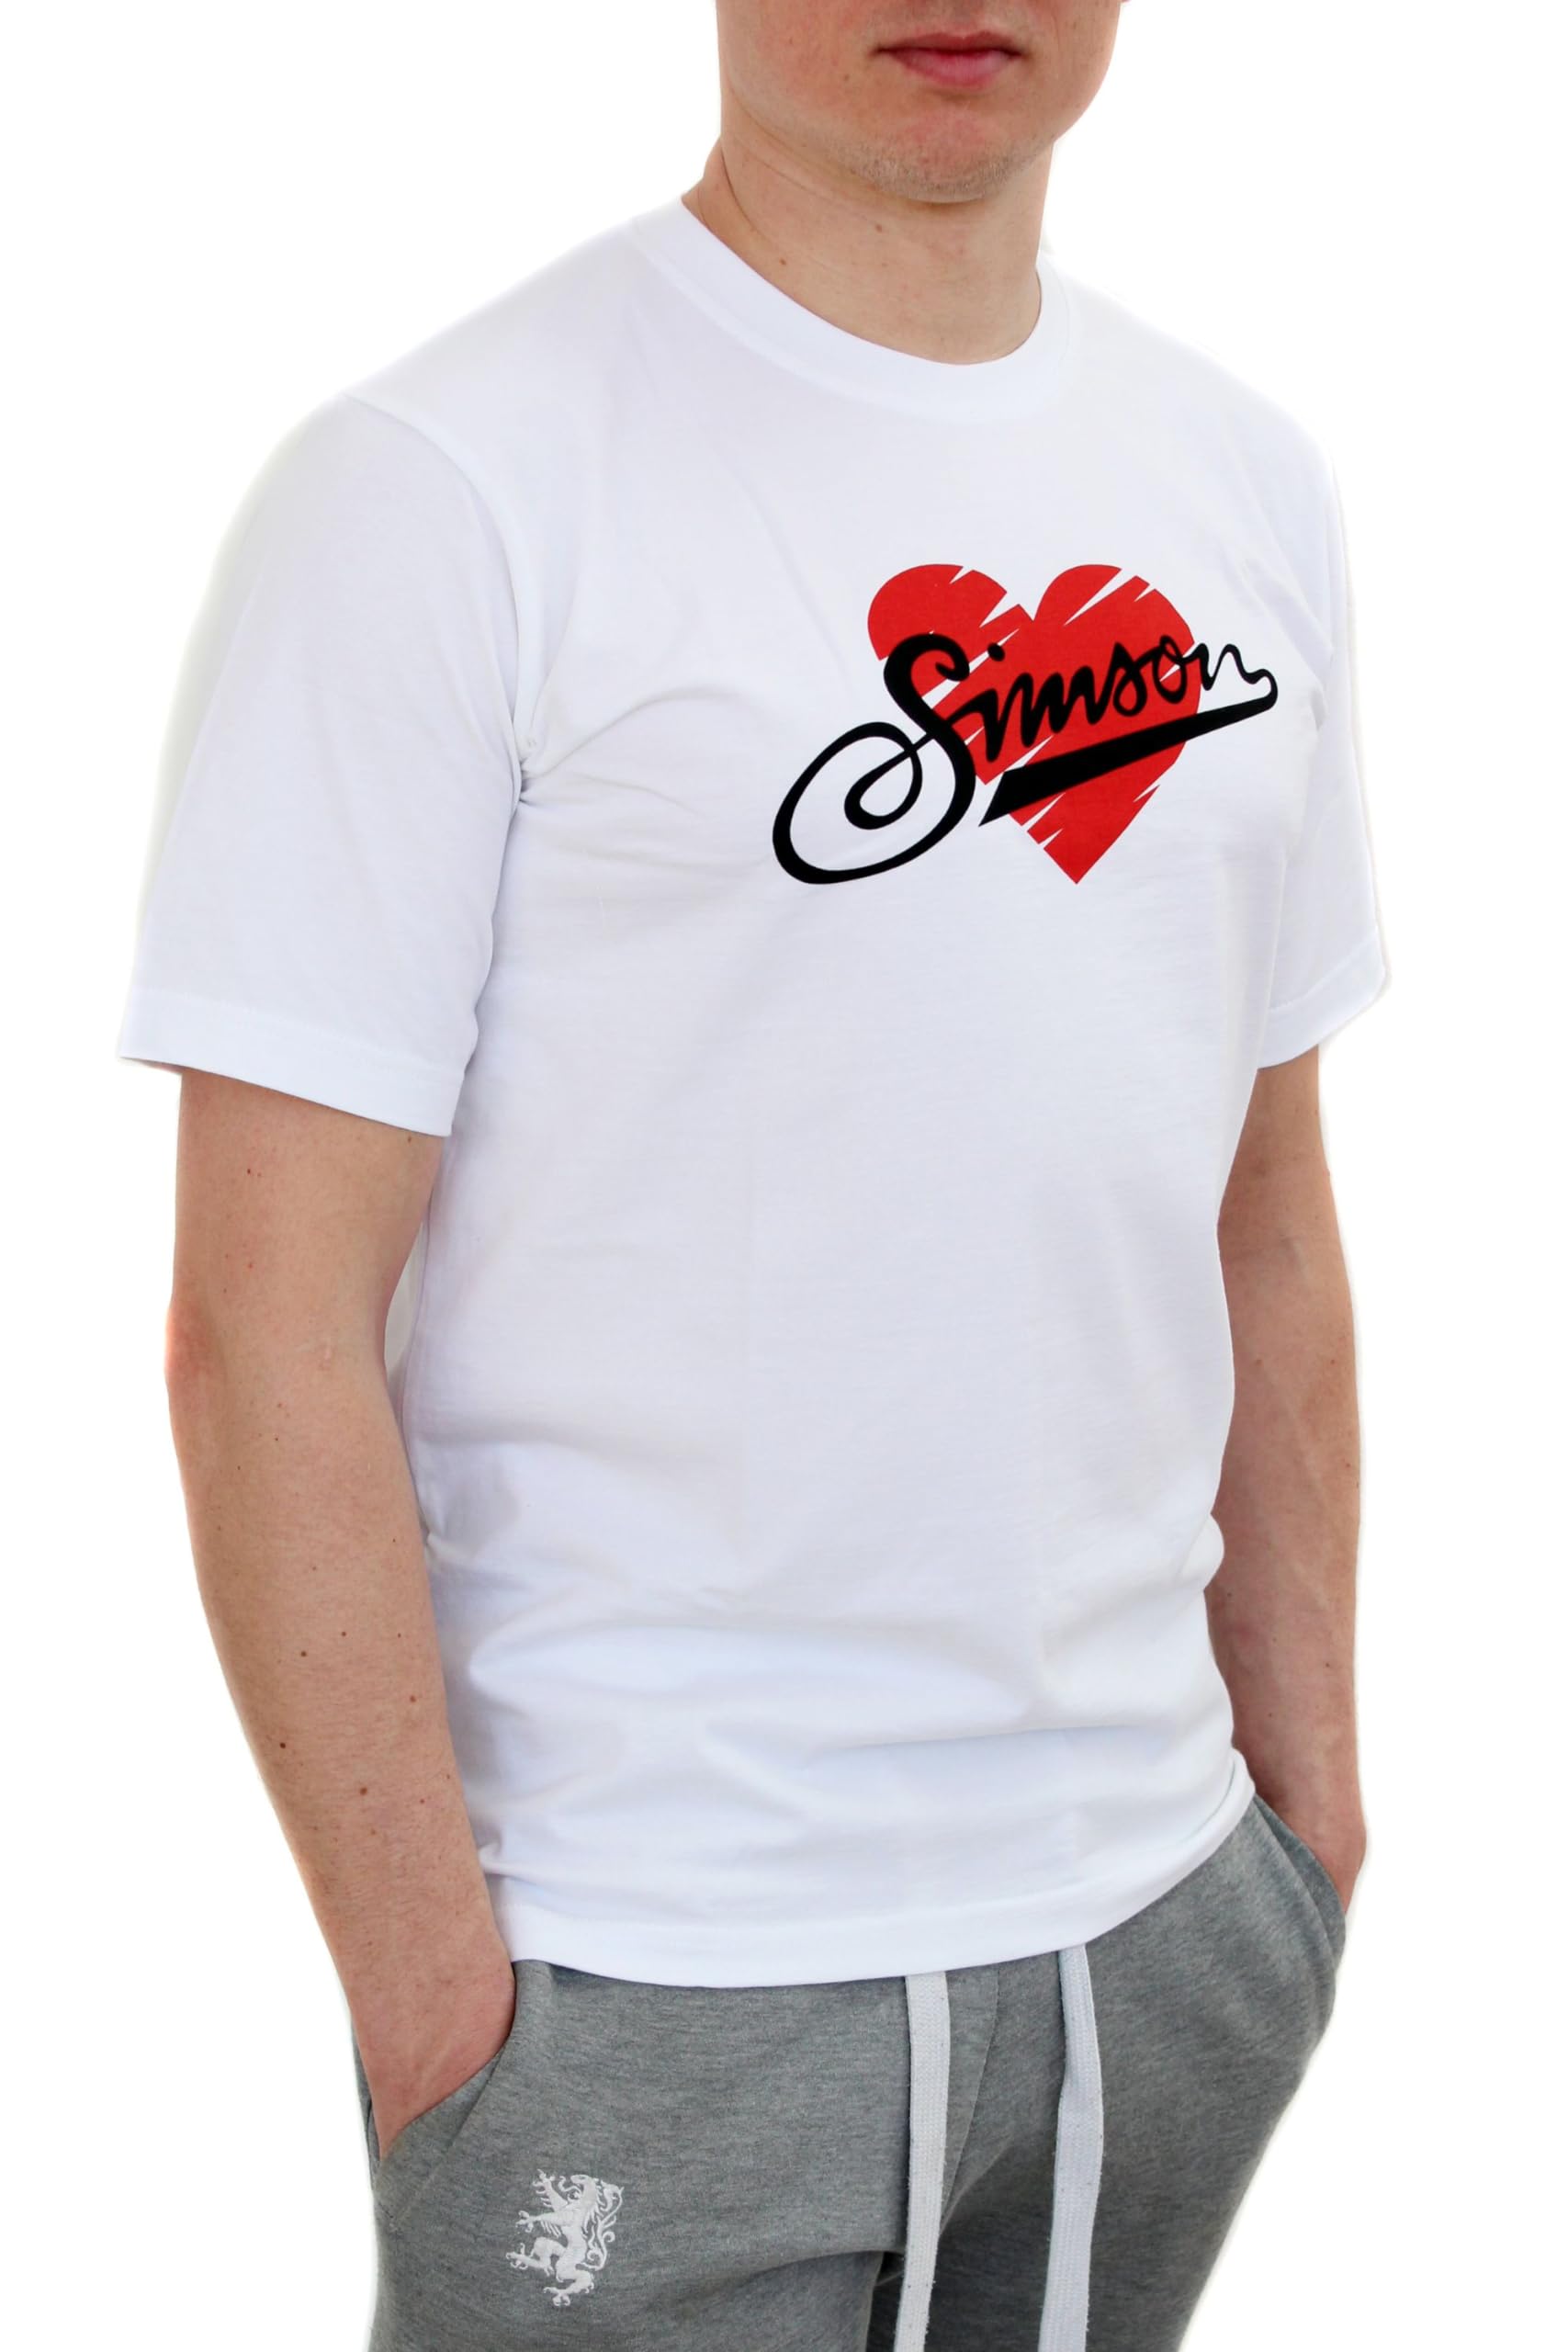 Simson T-Shirt, Motiv - Love Simson - 100% Baumwolle, Weiß, Größen XS - XXXL, original MZA Fan-Artikel, Größe:M von MZA